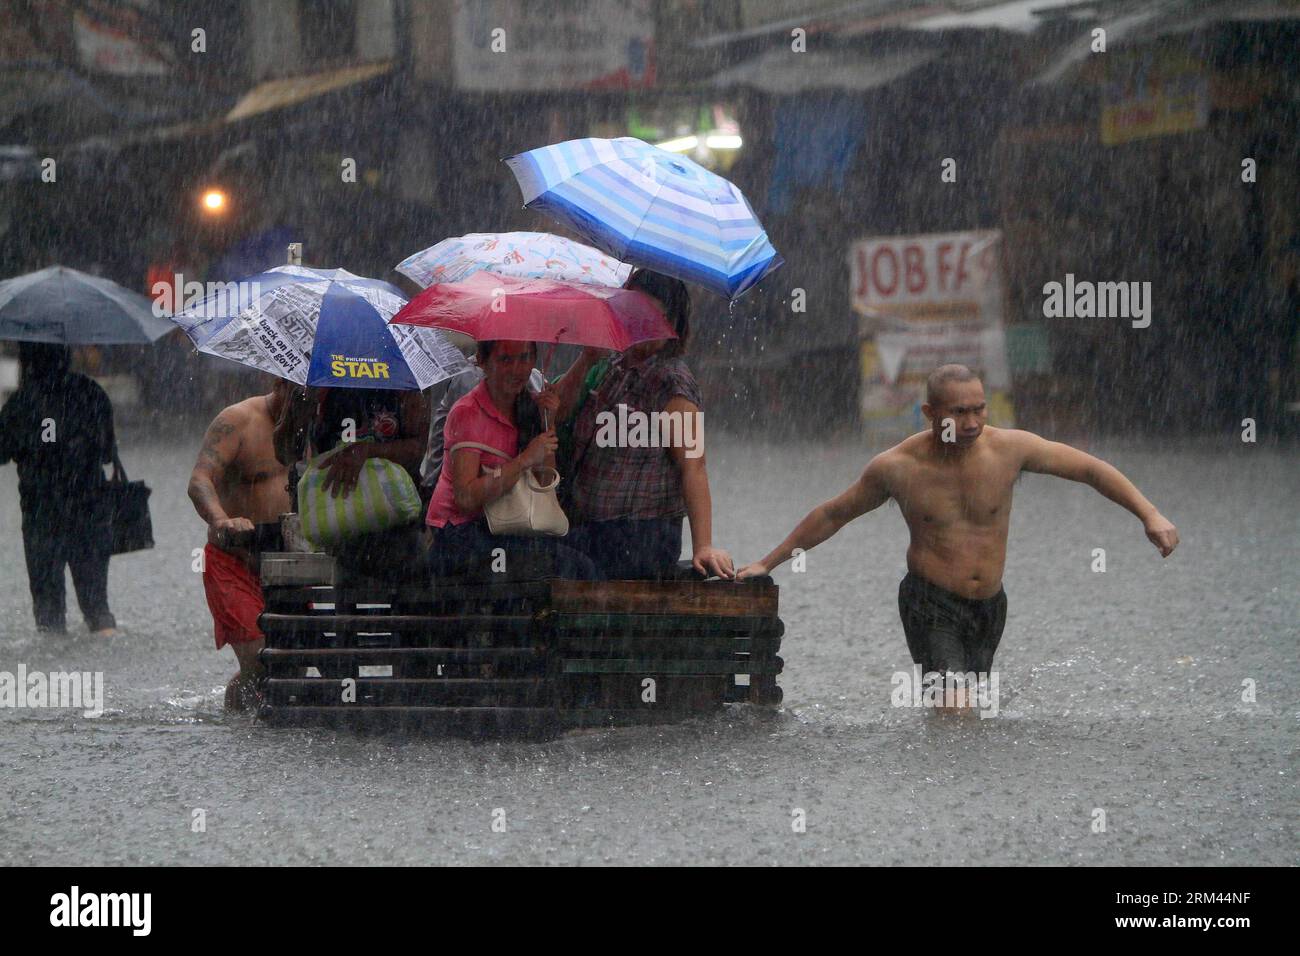 Bildnummer: 60372014 Datum: 20.08.2013 Copyright: imago/Xinhua (130820) -- QUEZON CITY, 20. August 2013 (Xinhua) -- Bewohner benutzen einen hölzernen Wagen, um sich während des starken Monsunregens in Quezon City, den Philippinen, am 20. August 2013 durch eine wassergesäumte Straße zu bewegen. Mindestens sieben Menschen starben und über 600.000 wurden durch massive Überschwemmungen in Metro Manila und anderen Teilen der Philippinen infolge des Südwest-Monsunregens betroffen, sagte ein hochrangiger Regierungsbeamter am Dienstag. (Xinhua/Rouelle Umali) (syq) PHILIPPINEN-QUEZON CITY-FLOOD PUBLICATIONxNOTxINxCHN Gesellschaft Naturkatastrophe Hochwasser Flut xcb x0x 2013 quer Stockfoto